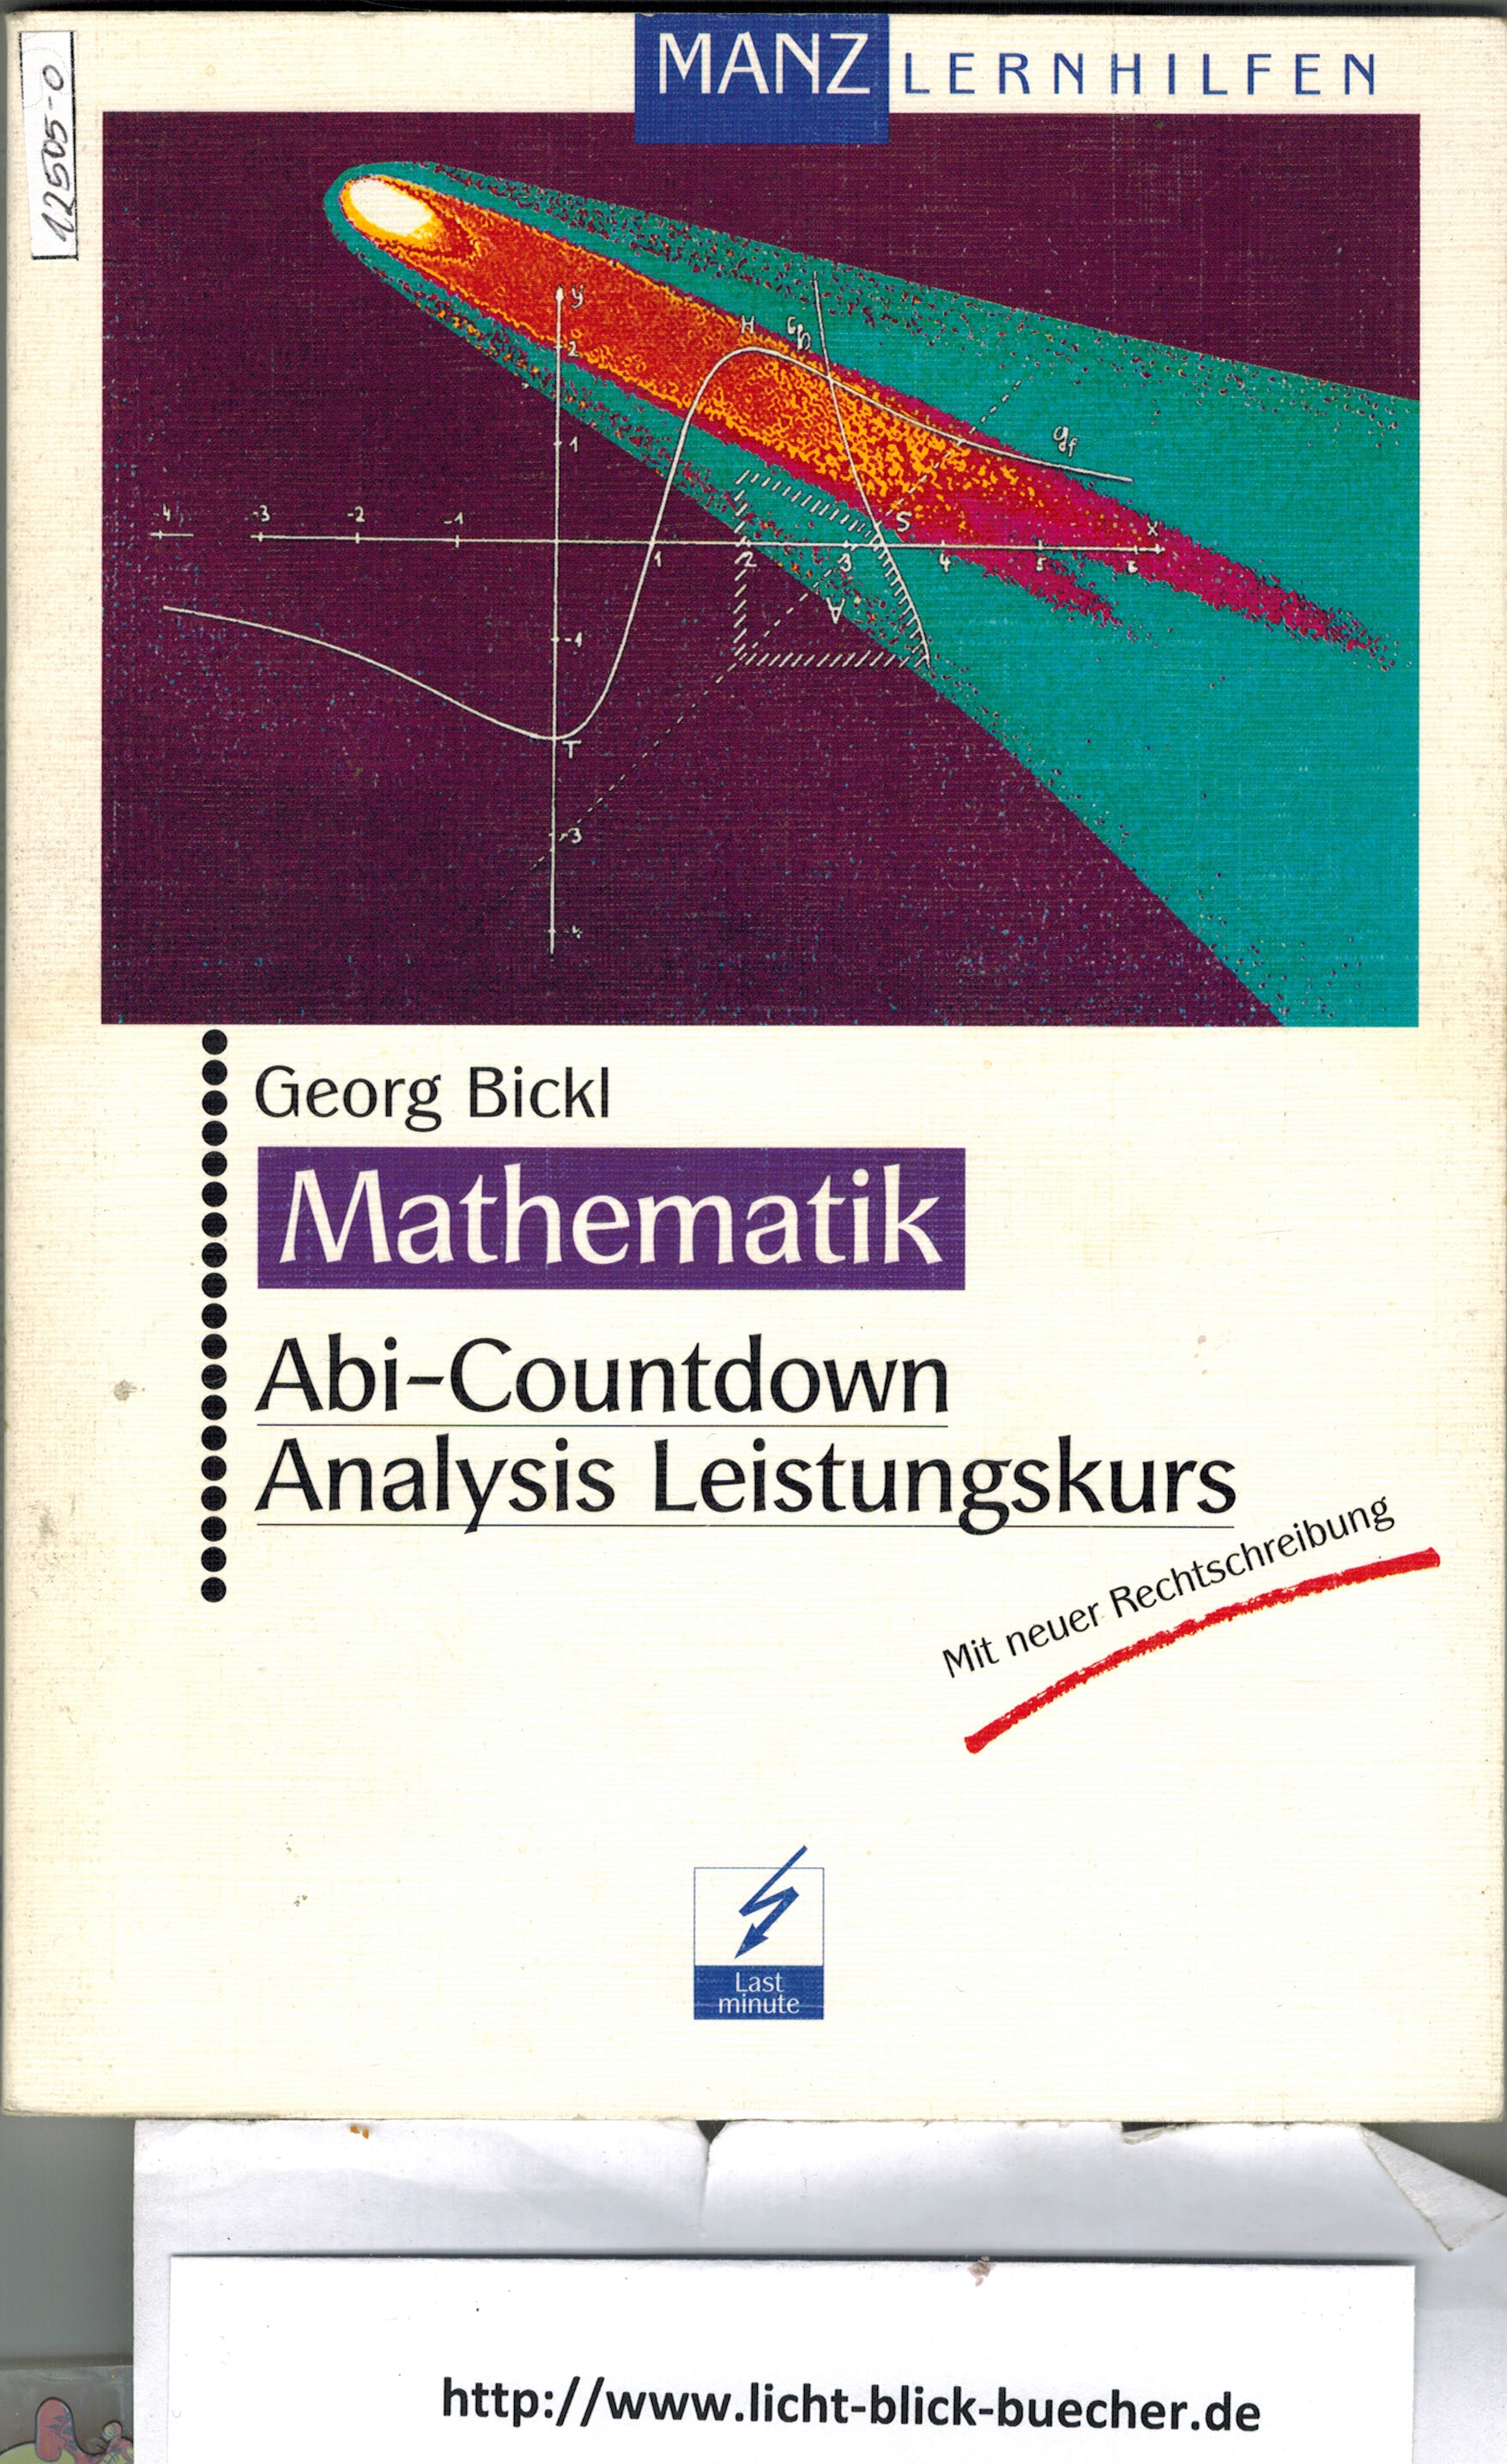 Mathematik Abi-Countdown Analysis LeistungskursGeorg Bickl  Manz Lernhilfen